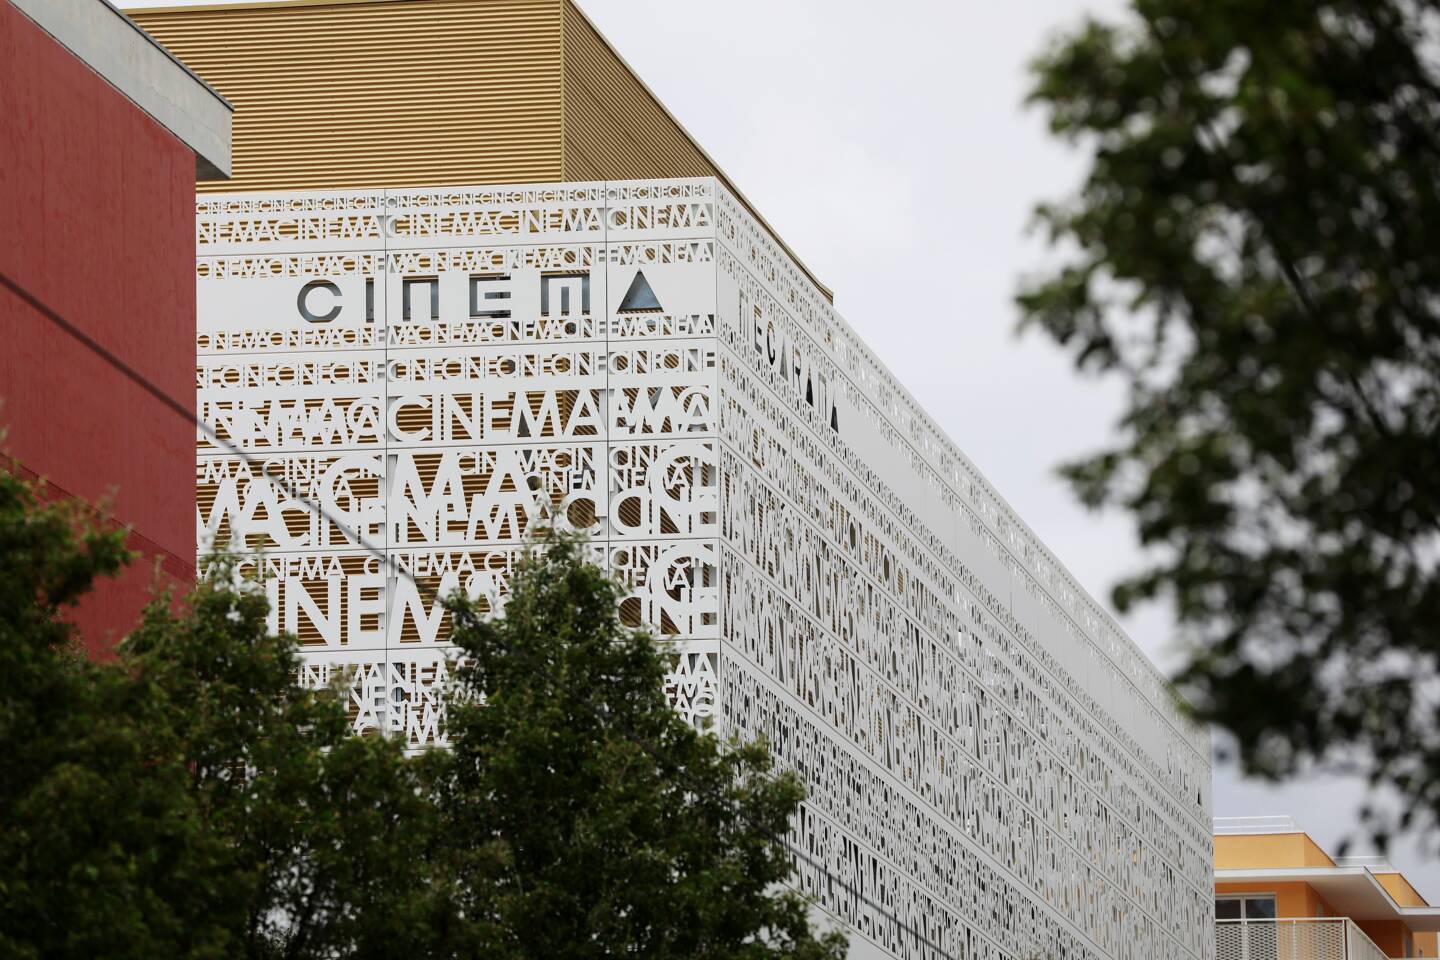 La façade mettra en scène le mot "cinéma" écrit de mille manières.
(Photo Dylan Meiffret)